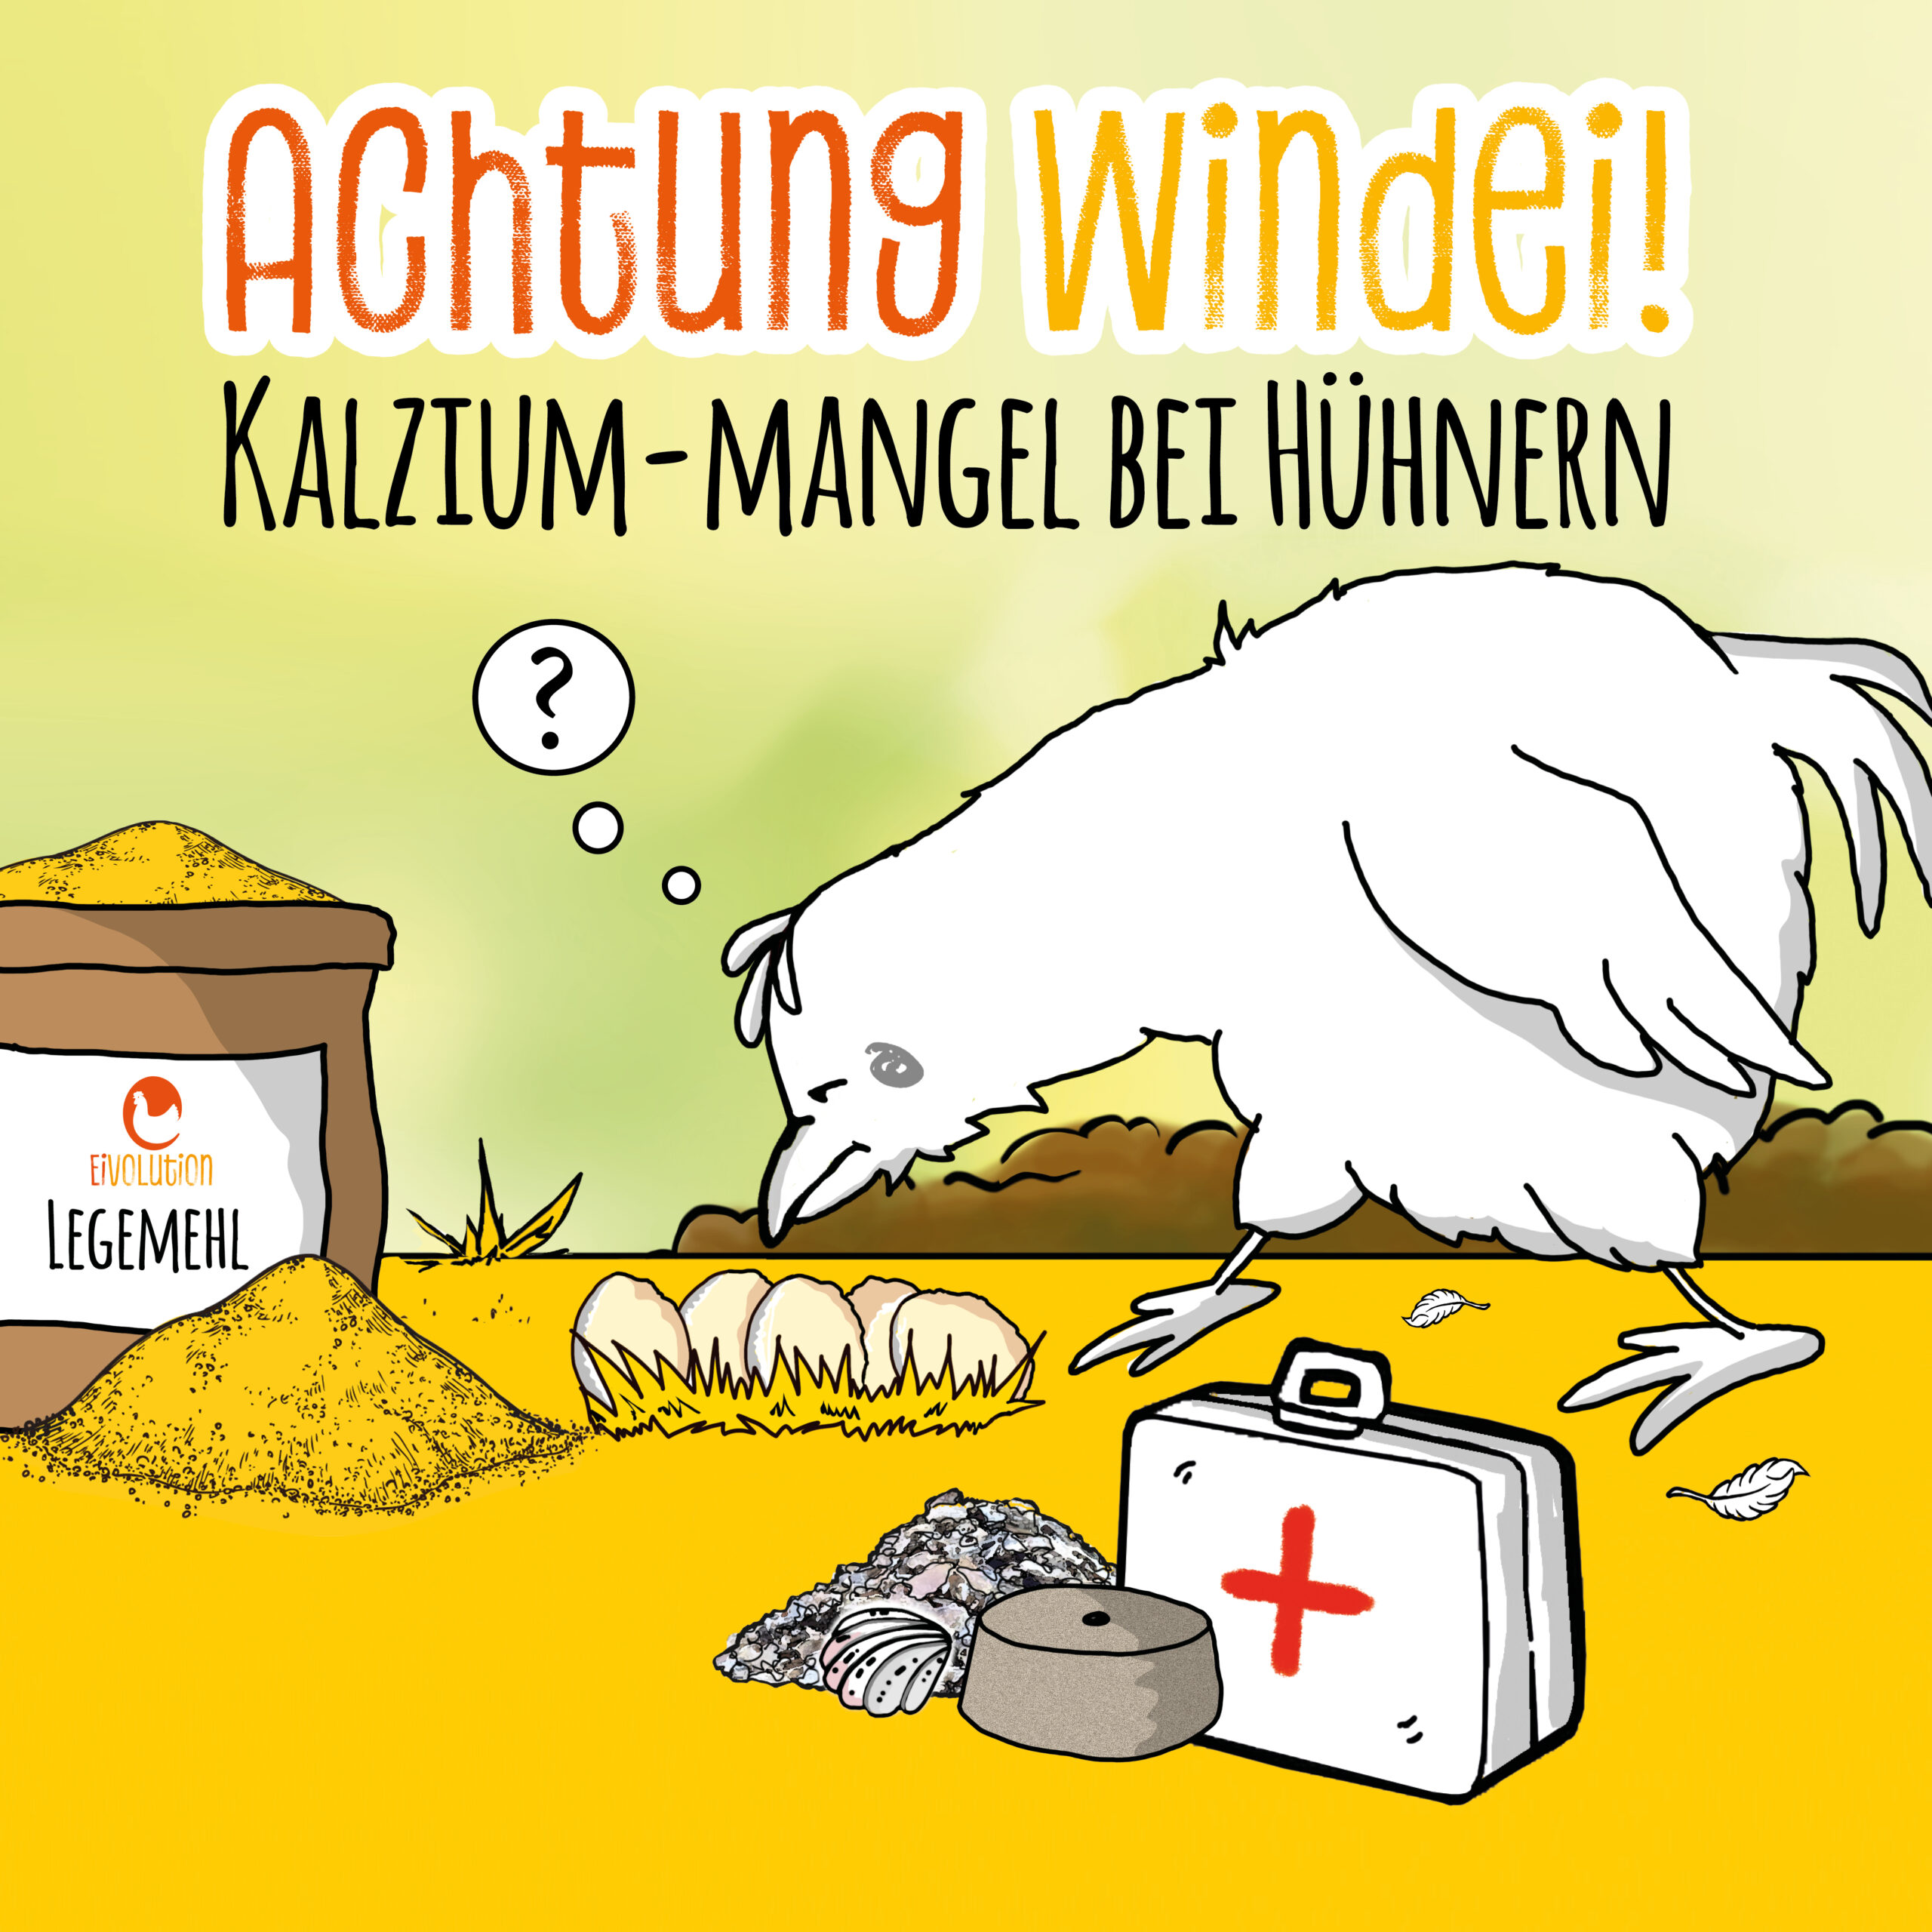 Achtung Windei! – Kalzium-Mangel bei Hühnern